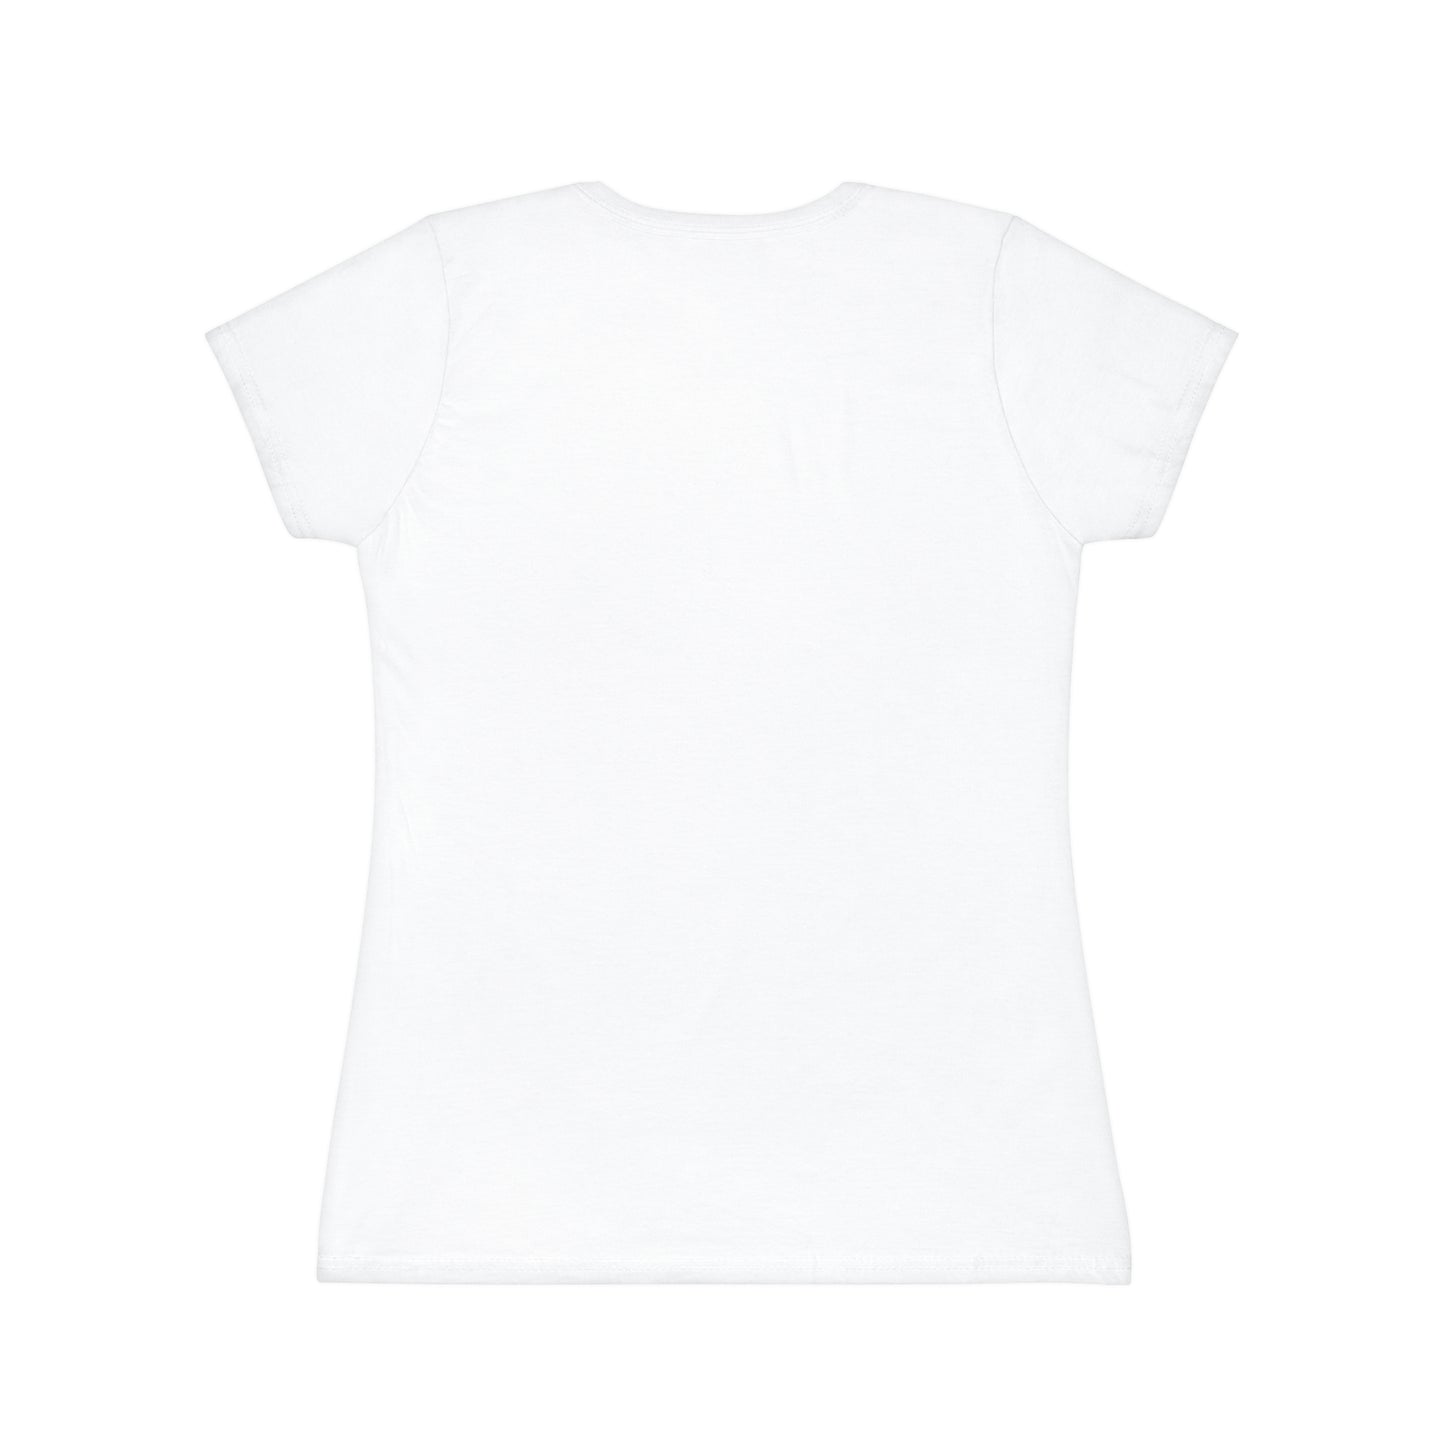 'CRUSHIN ON MY EX' Women's Iconic T-Shirt